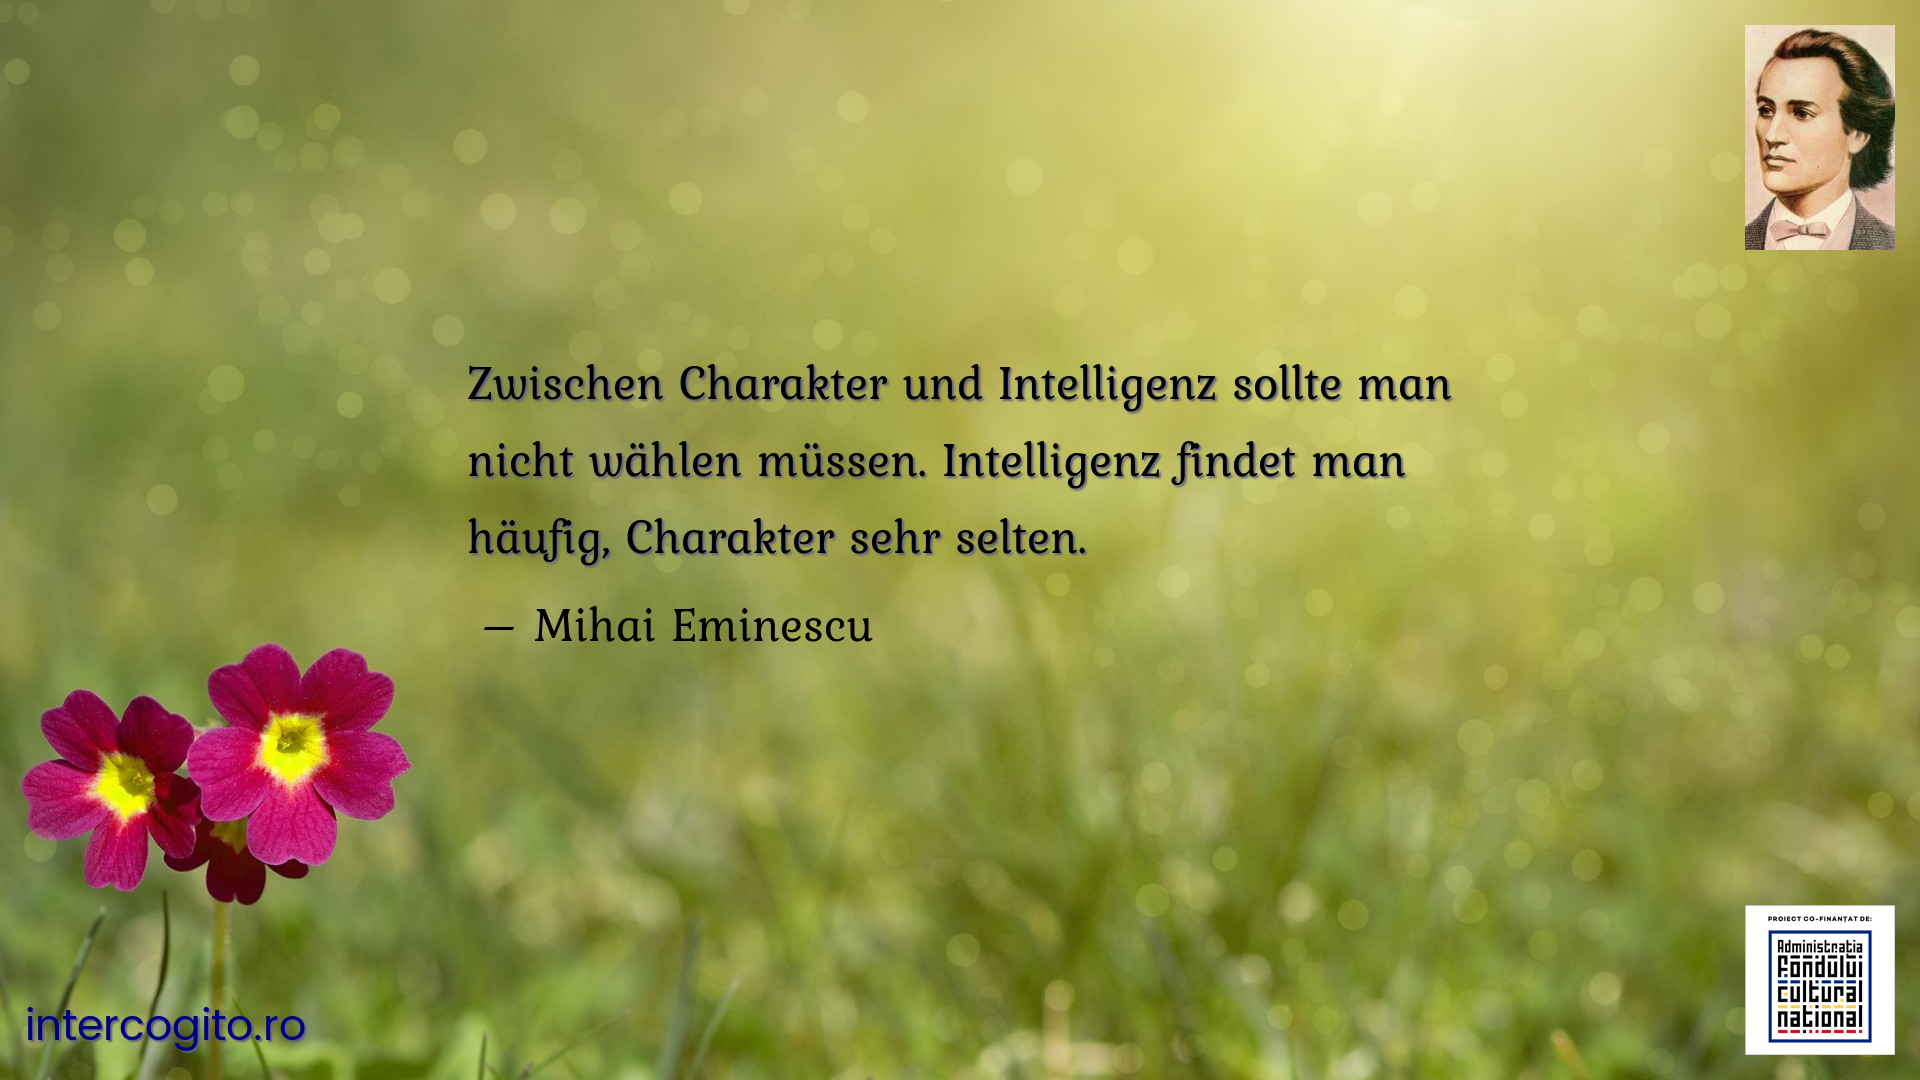 Zwischen Charakter und Intelligenz sollte man nicht wählen müssen. Intelligenz findet man häufig, Charakter sehr selten. 